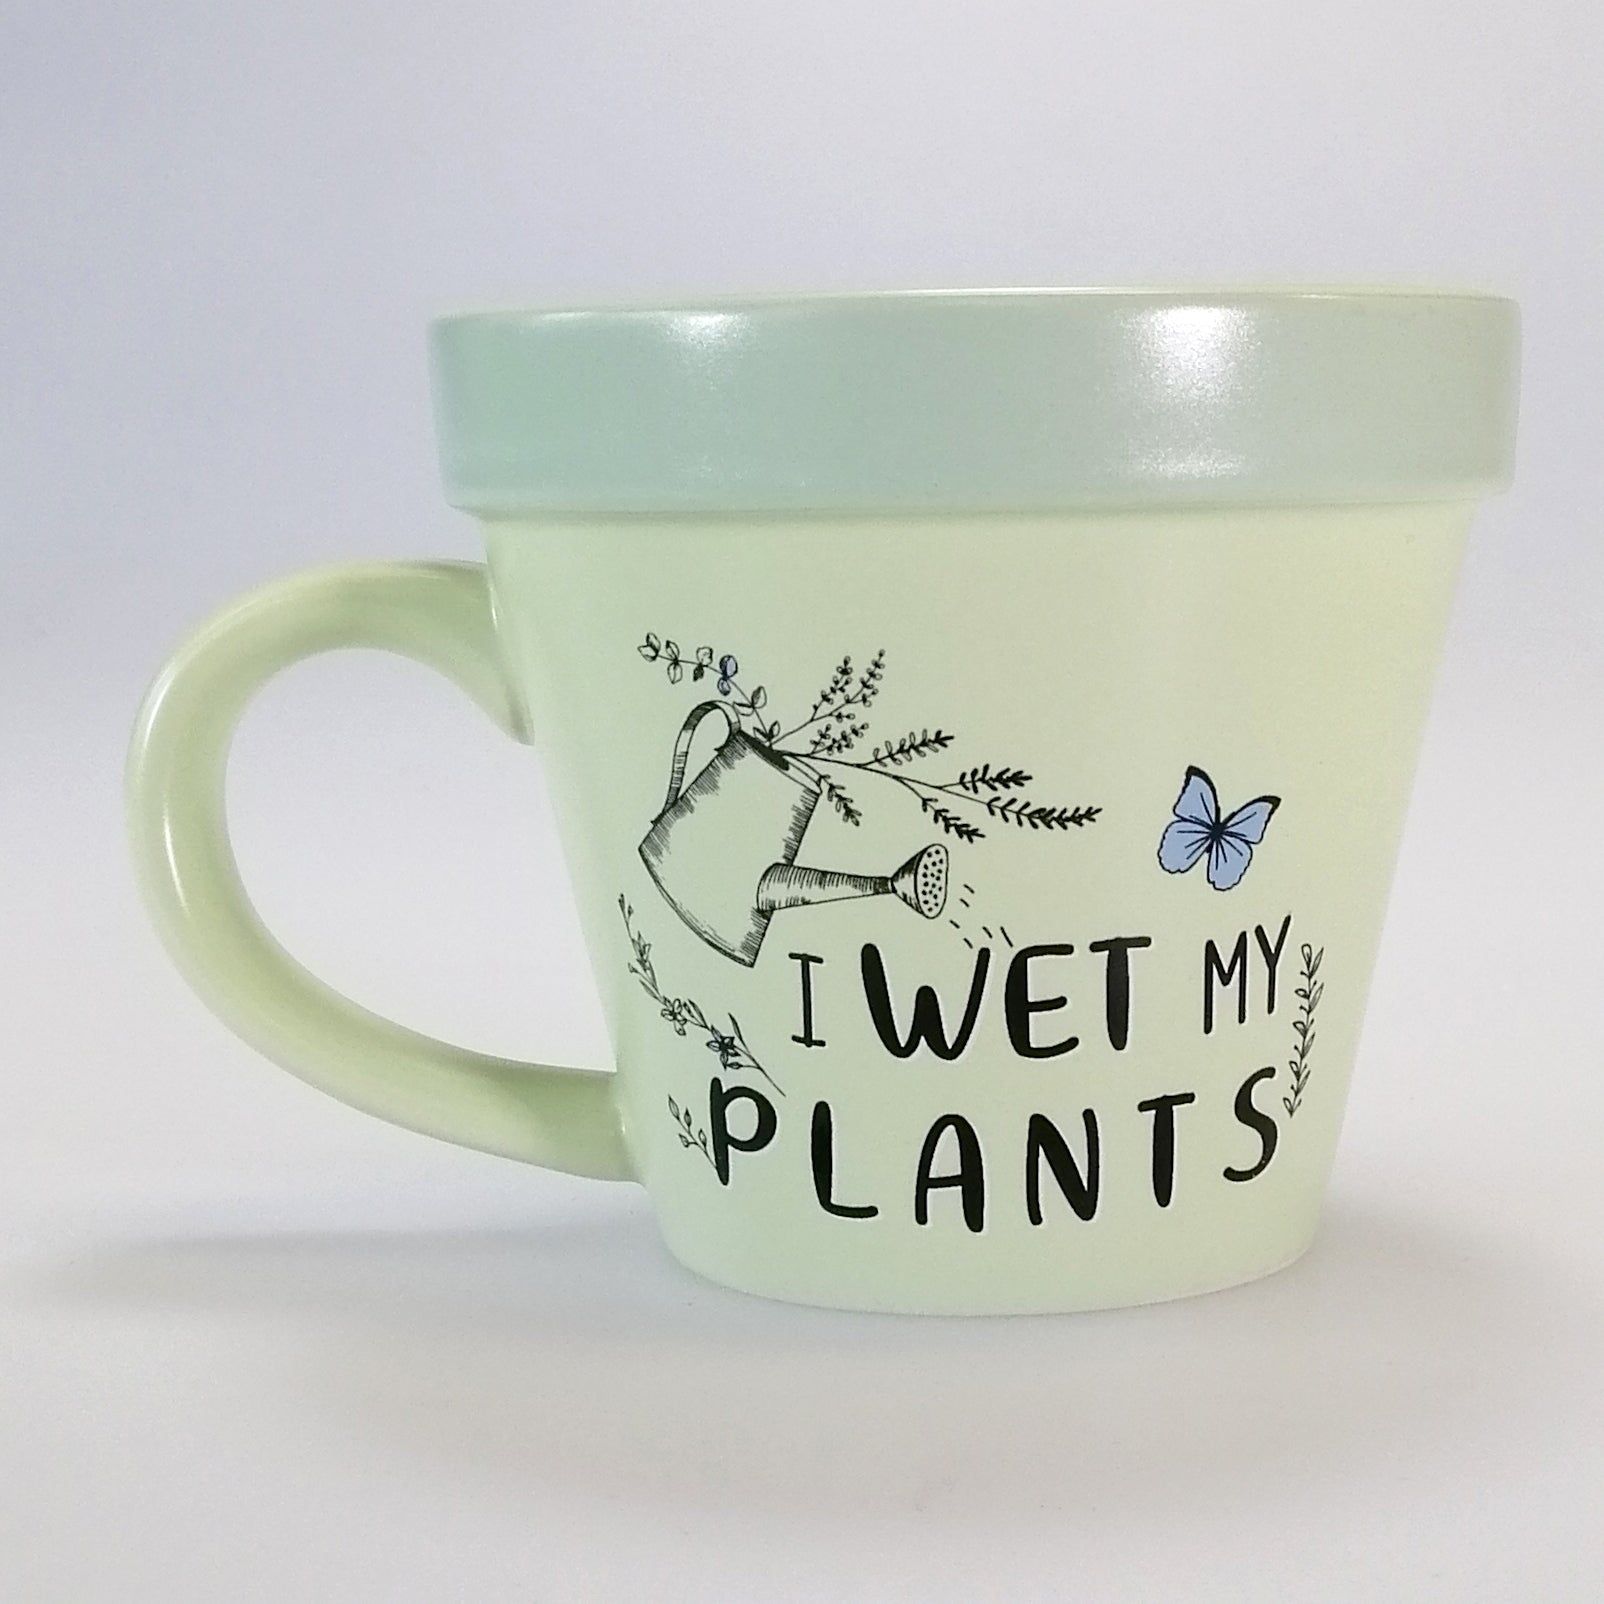 I Wet My Plants' Gardener Mug